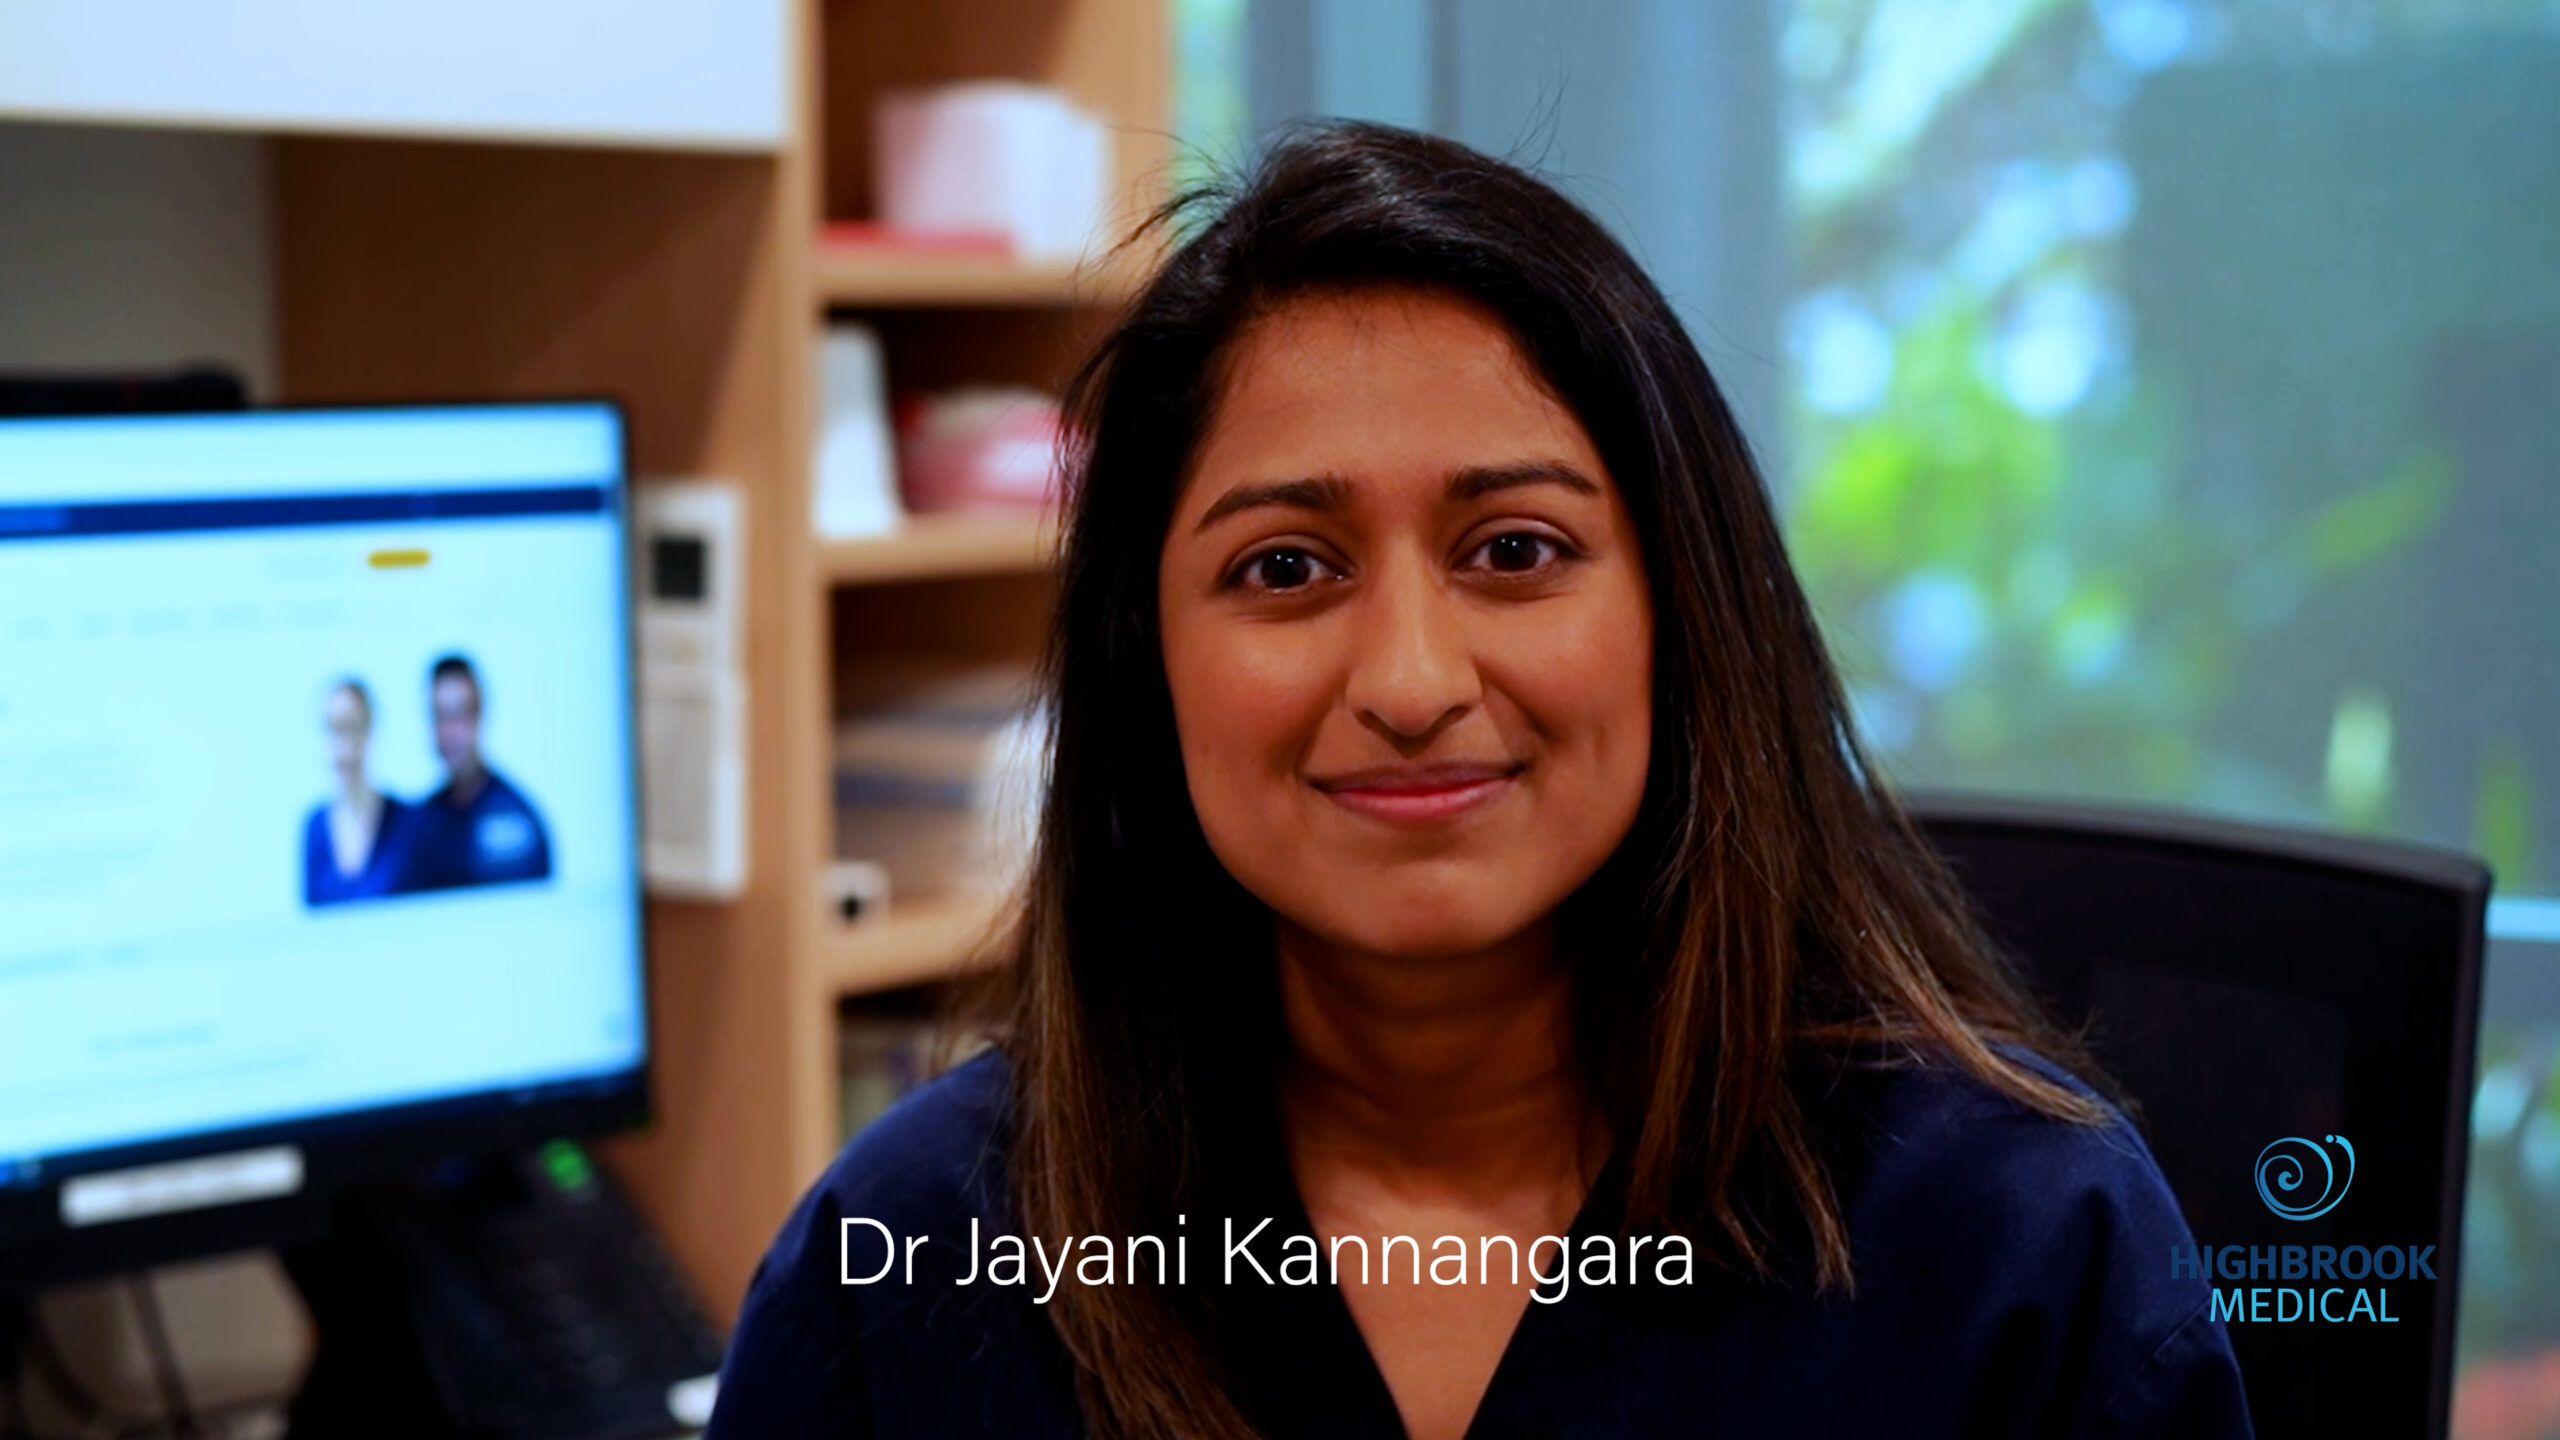 Highbrook Medical Dr Jayani Kannagara